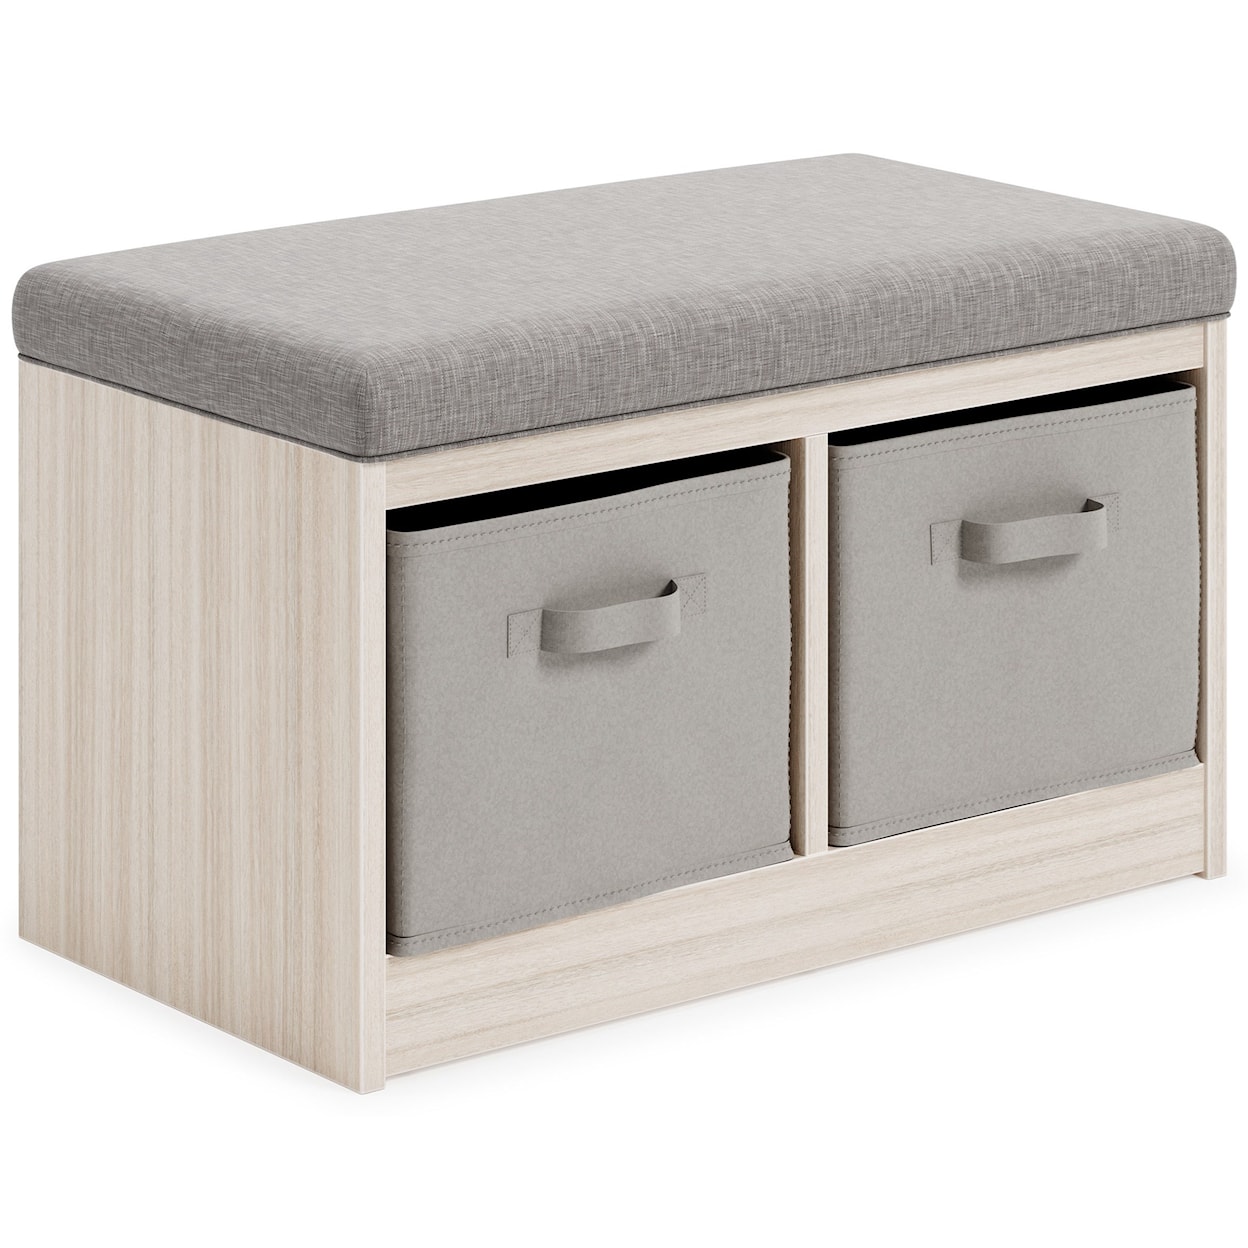 Ashley Furniture Signature Design Blariden Storage Bench